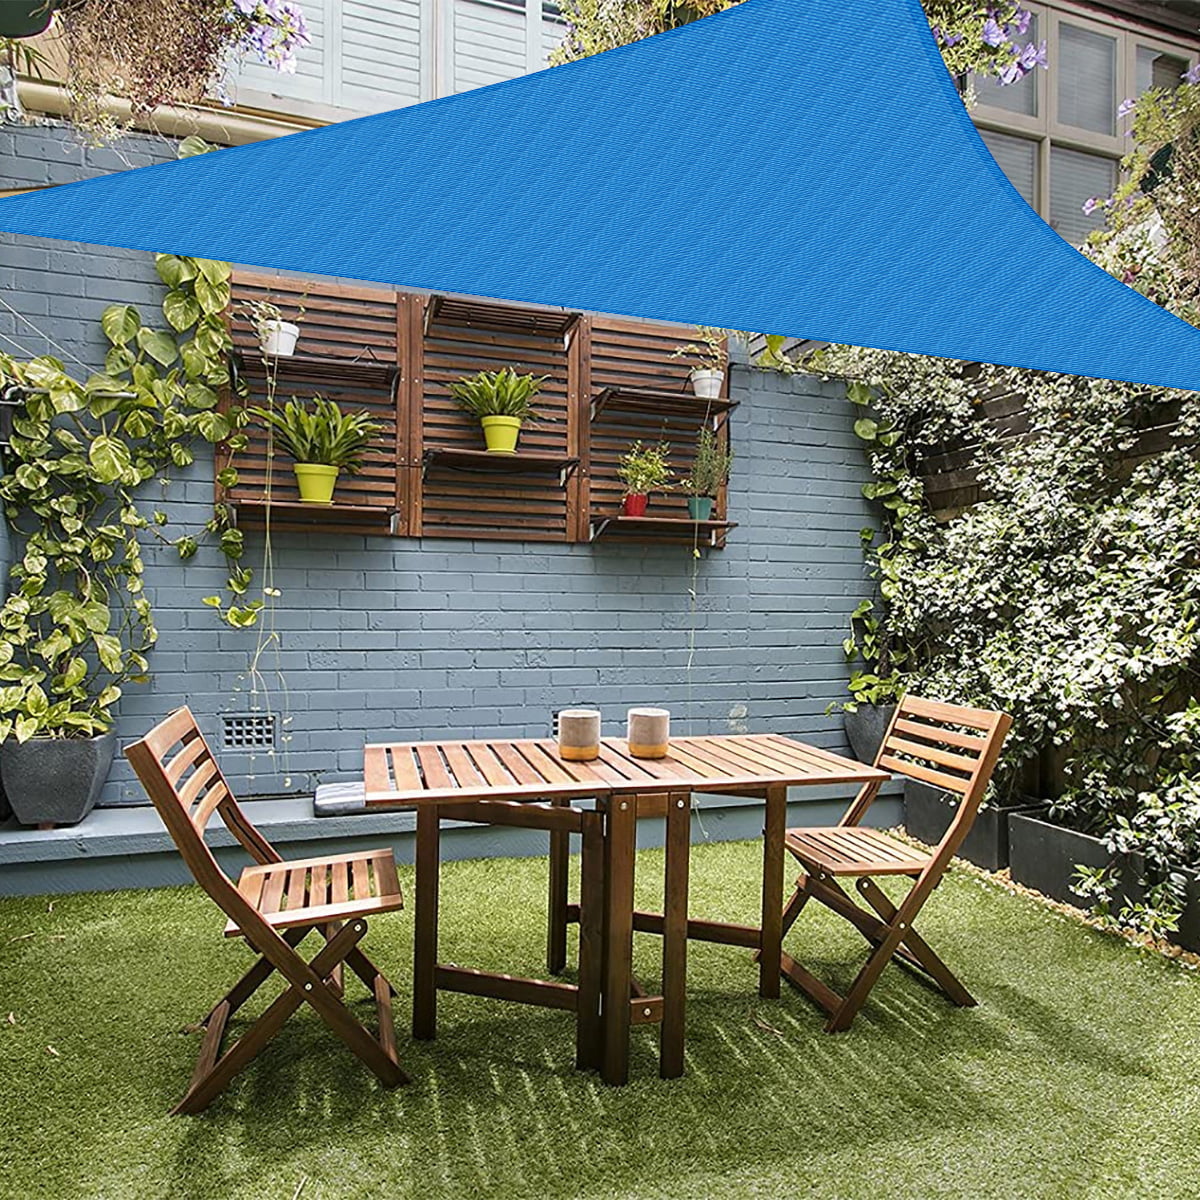 Sun Shade Sail Garden Patio Sunscreen Awning Canopy Shade 98%UV Block Waterproof 